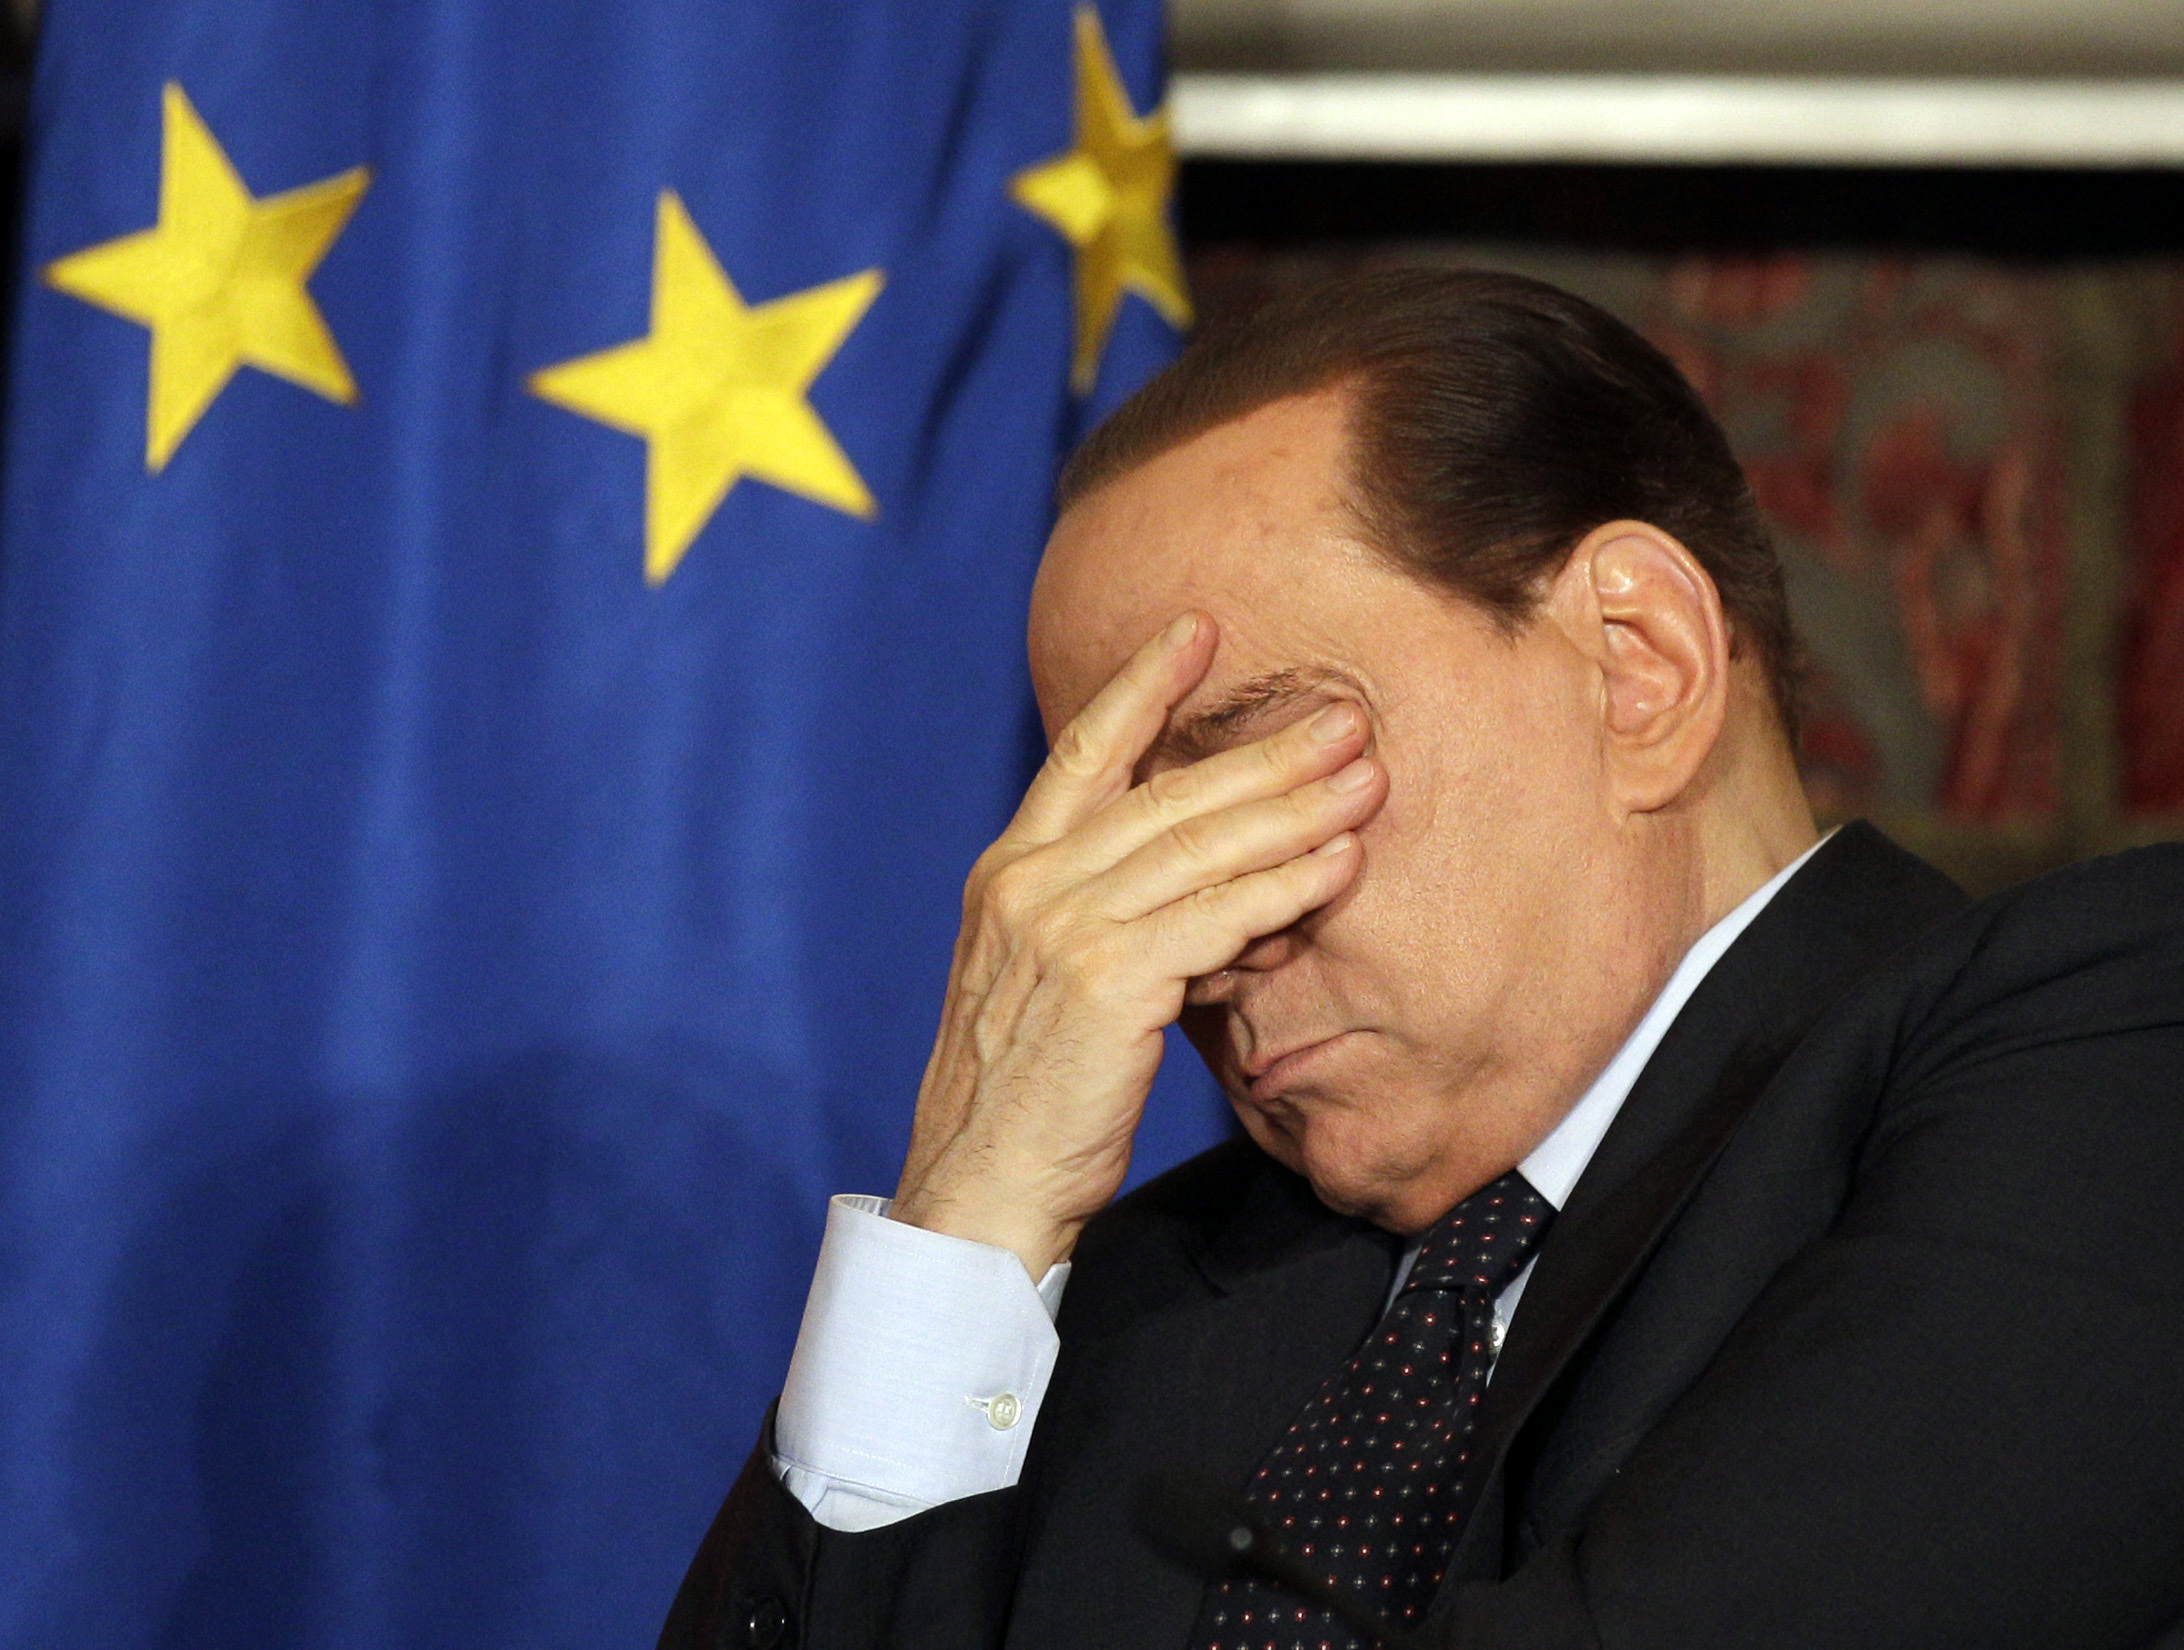 strippa, Köp av sexuell tjänst, Silvio Berlusconi, dans, Flicka, Prostitution, Burlesk, Italien